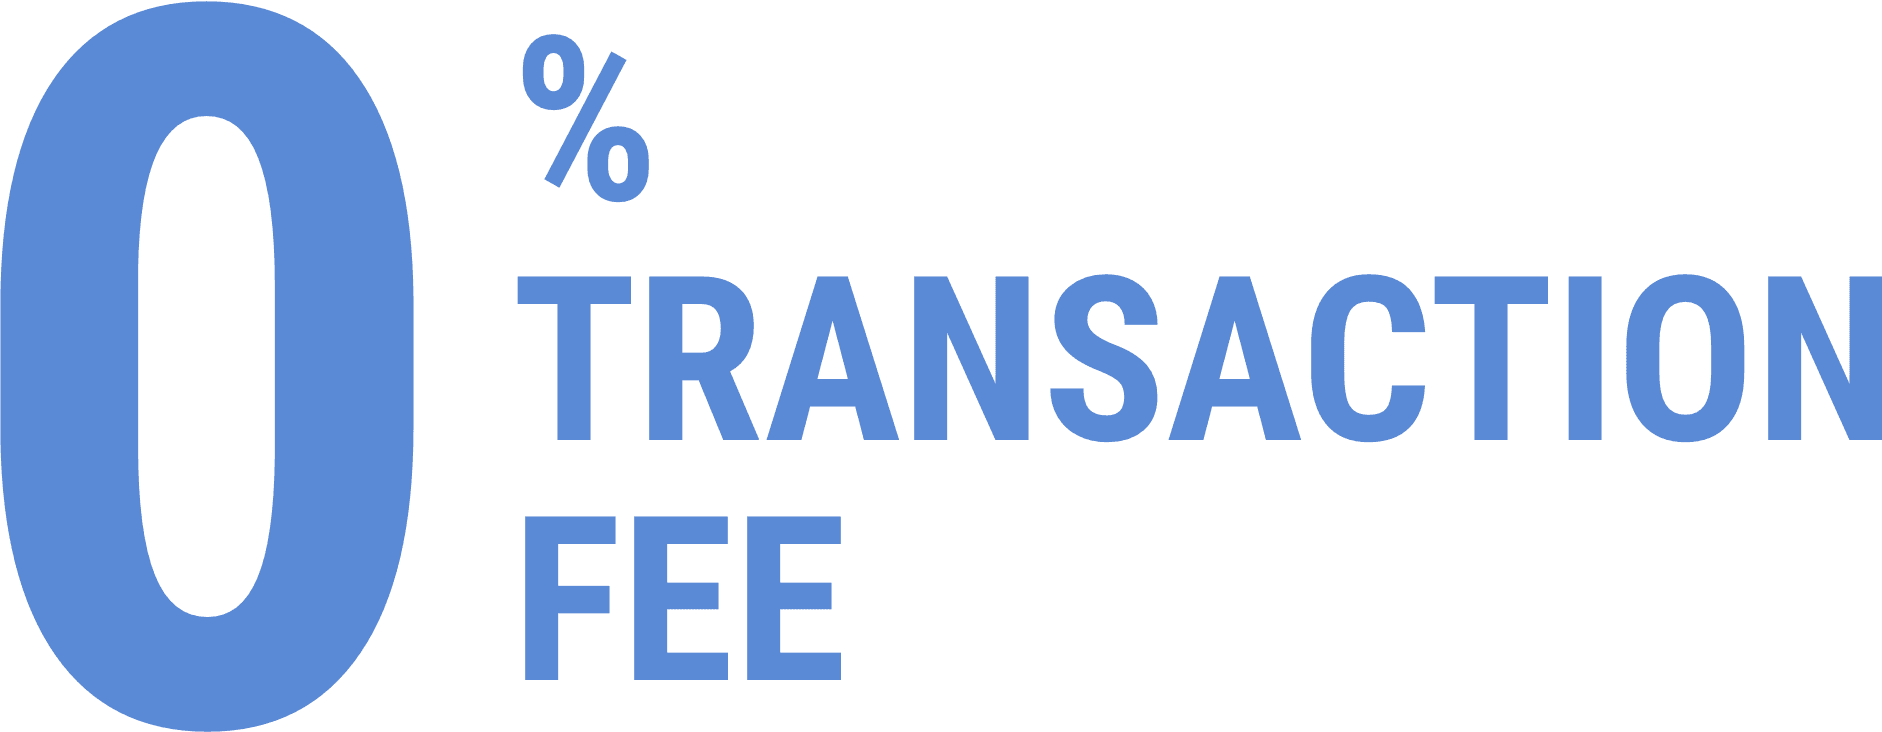 Zero transaction fee